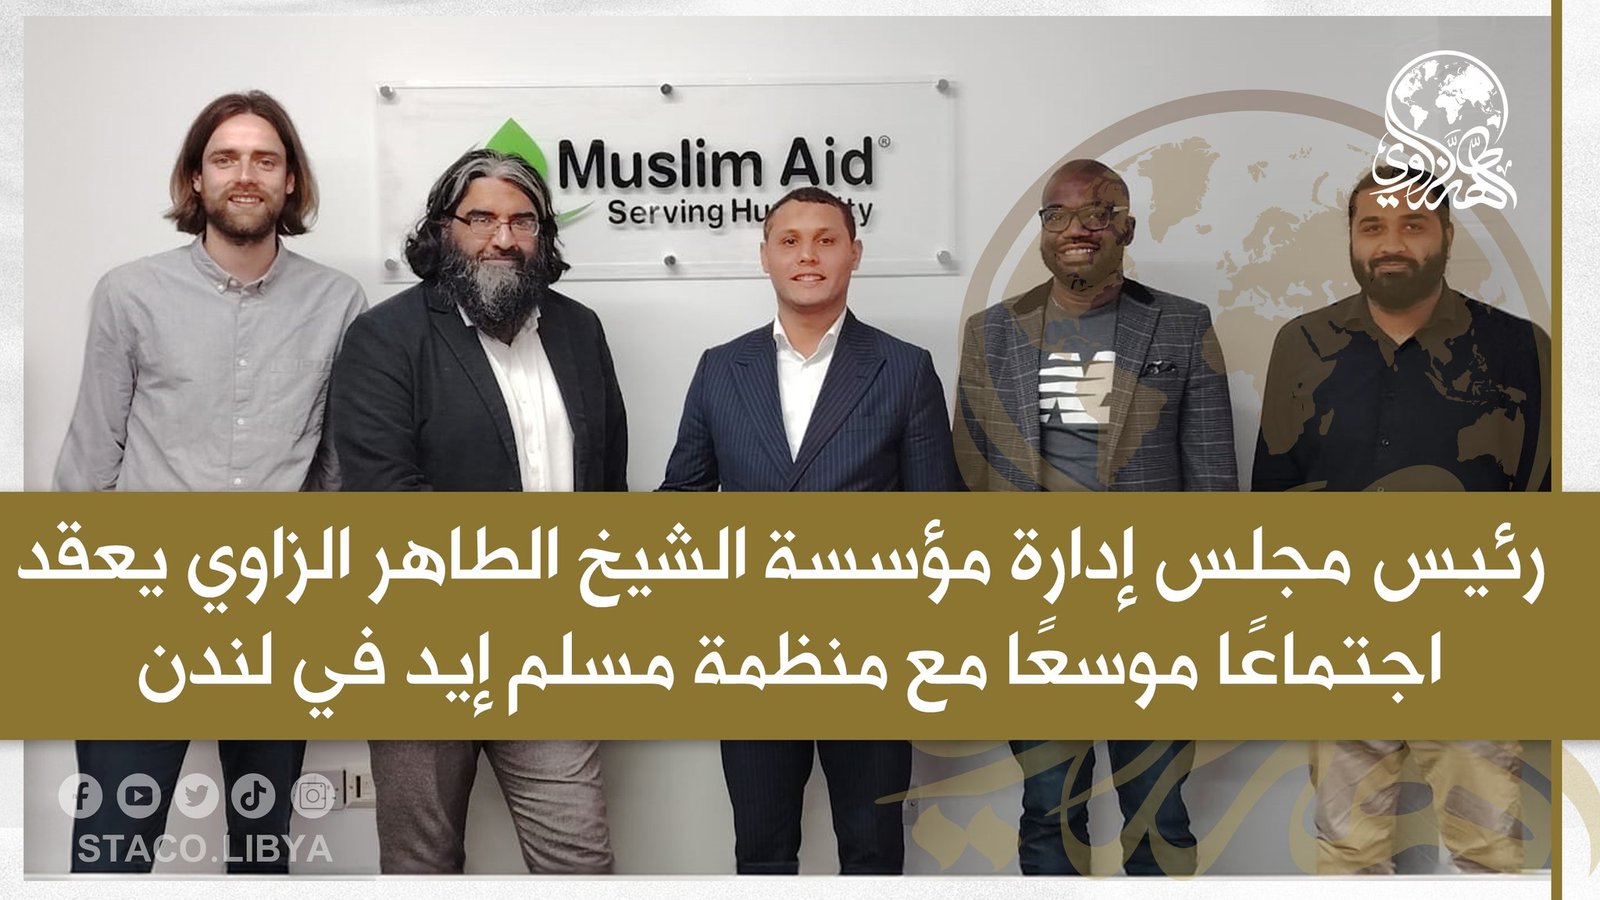 رئيس مجلس إدارة مؤسسة الشيخ الطاهر الزاوي يعقد اجتماعًا موسعًا مع منظمة مسلم إيد في لندن